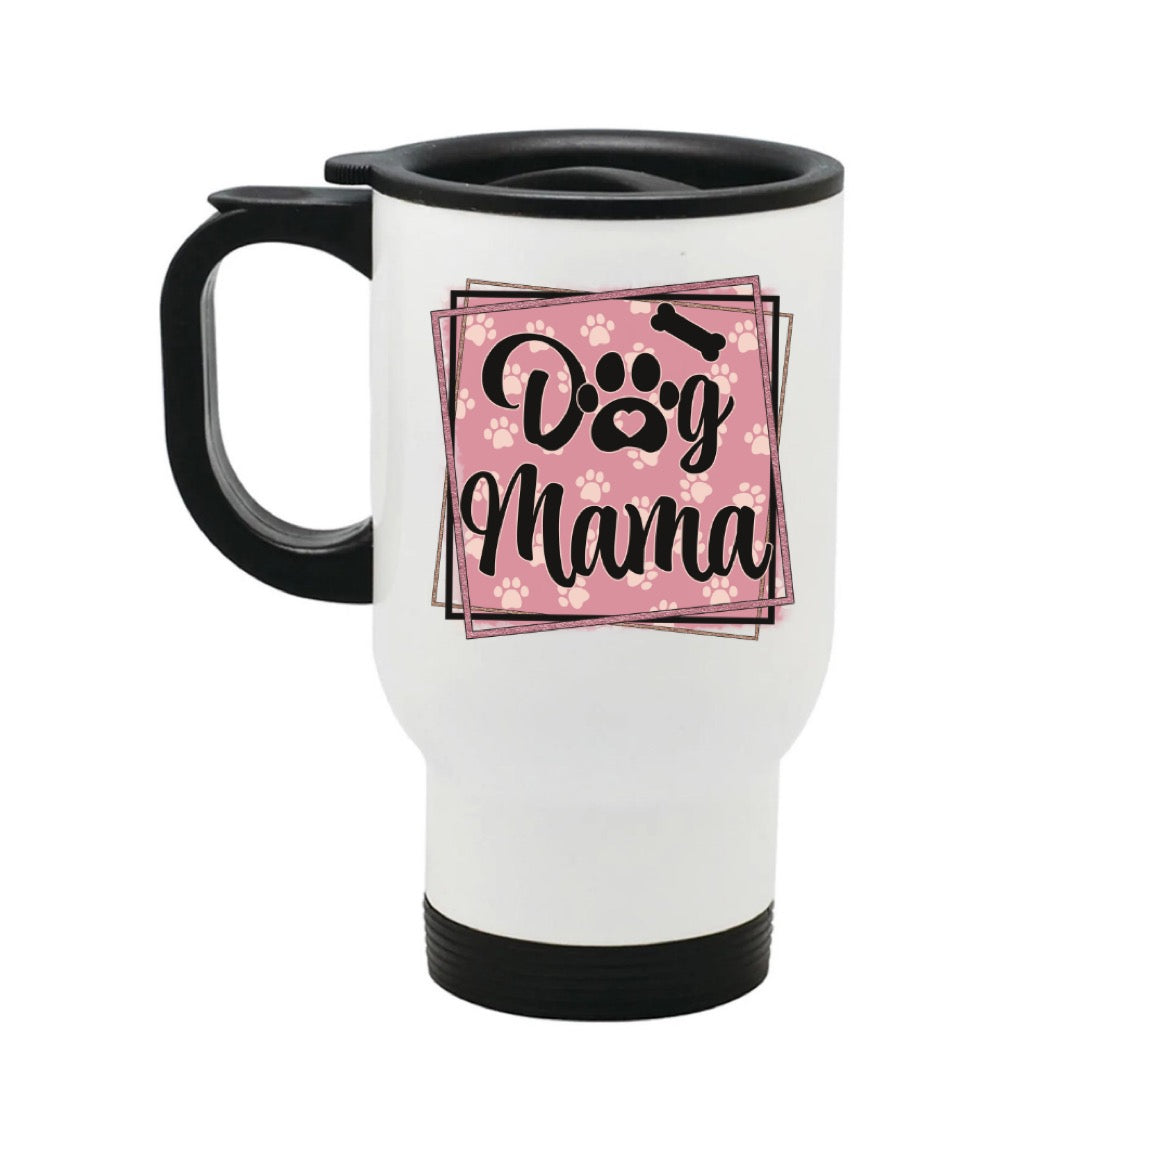 Dog Mama - Travel Mug